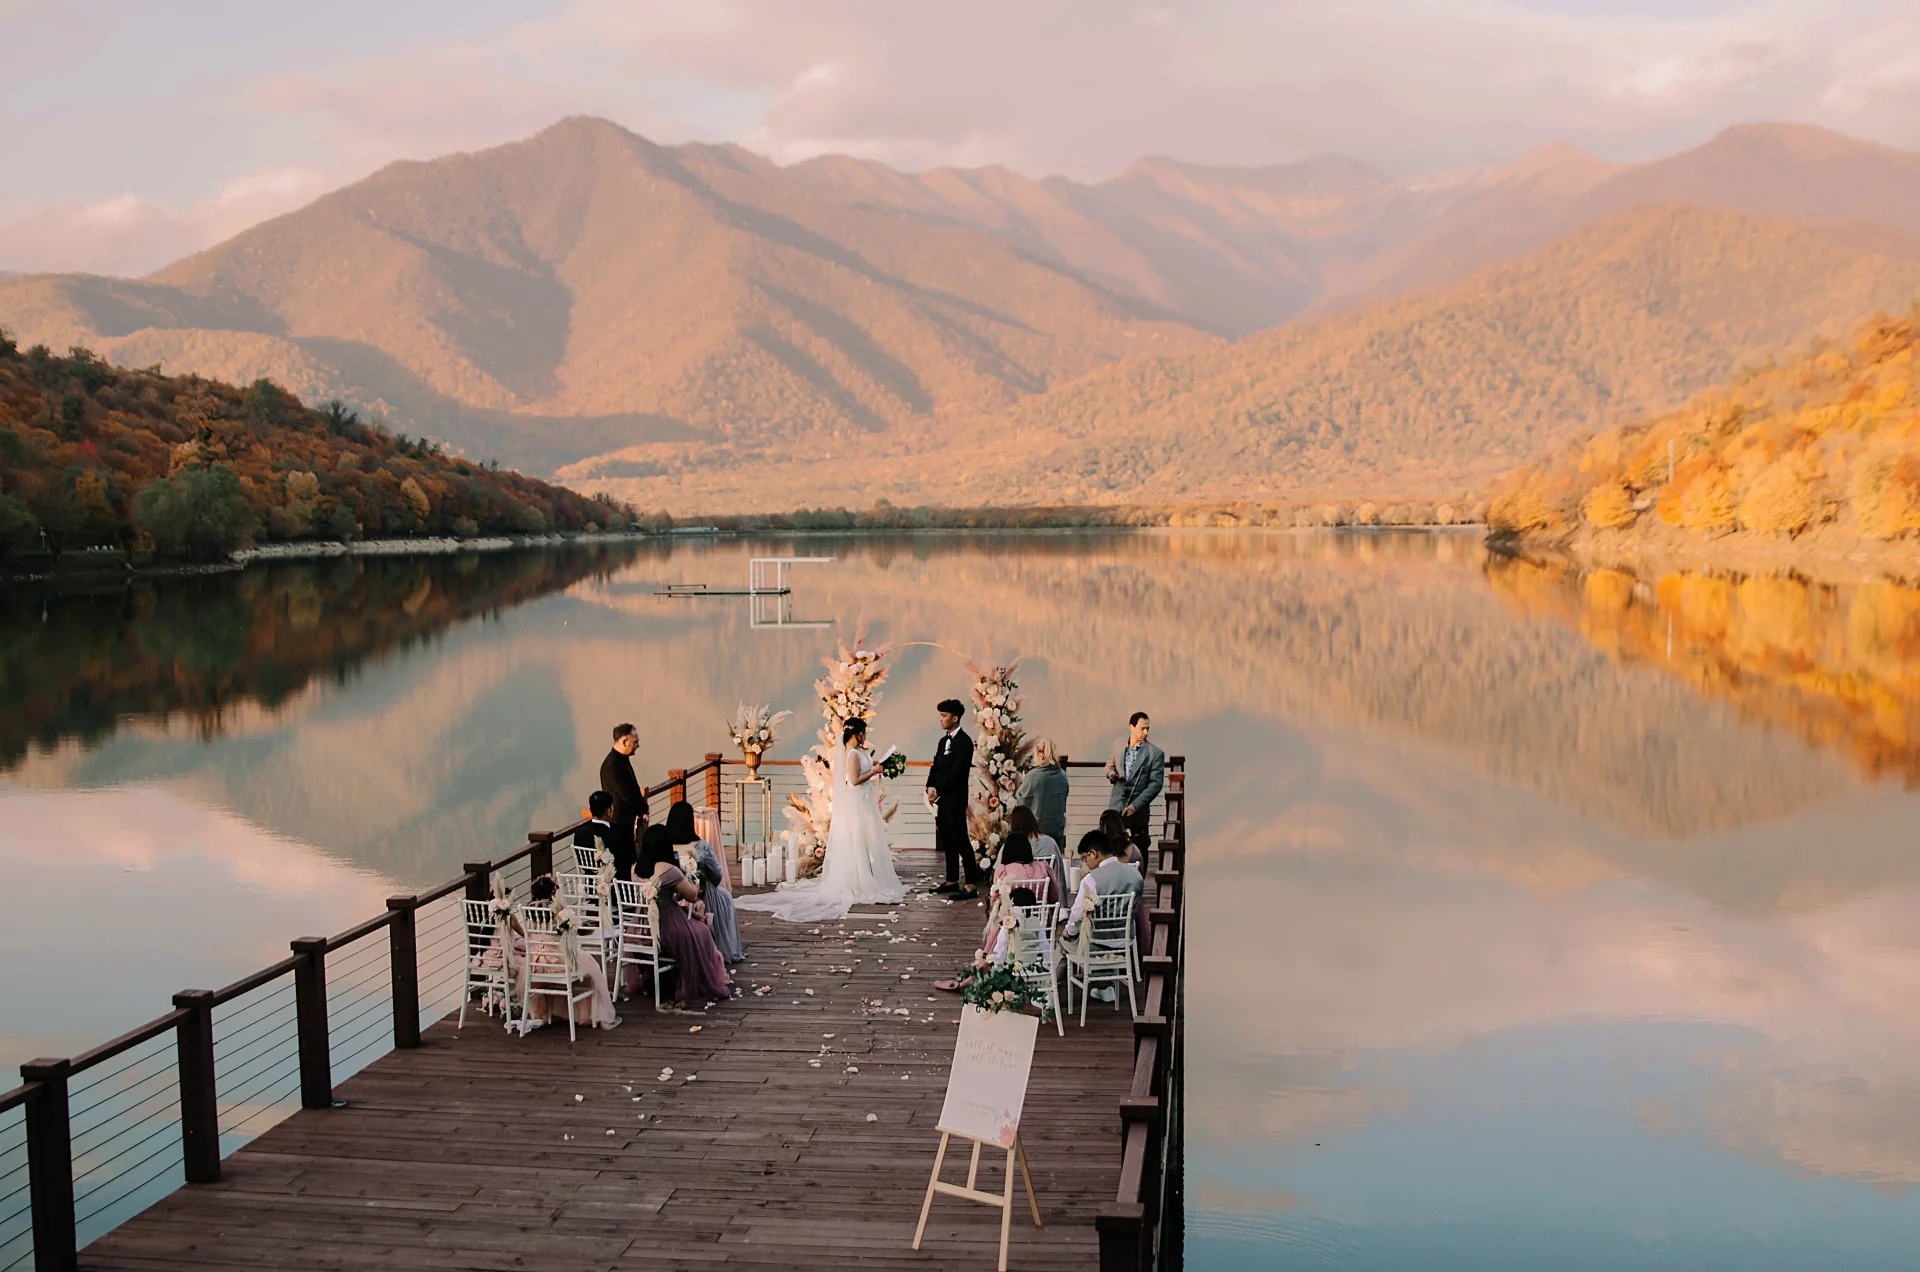 Wedding at the lake in Georgia